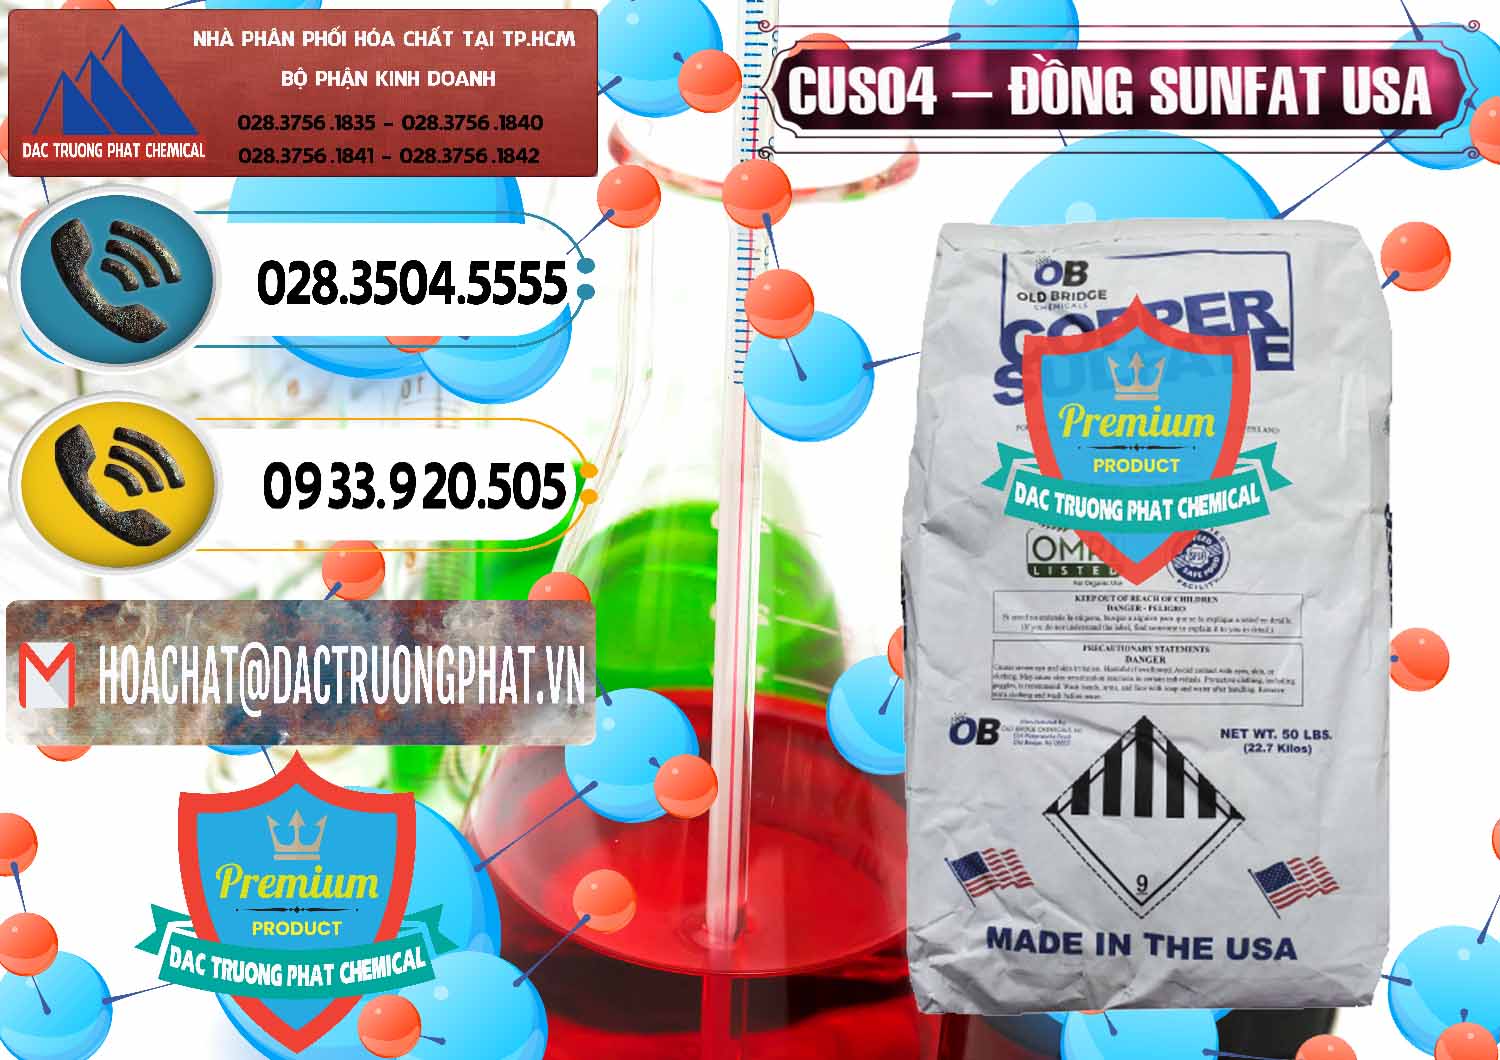 Công ty chuyên phân phối và bán CuSO4 – Đồng Sunfat Mỹ USA - 0479 - Đơn vị phân phối _ cung cấp hóa chất tại TP.HCM - hoachatdetnhuom.vn